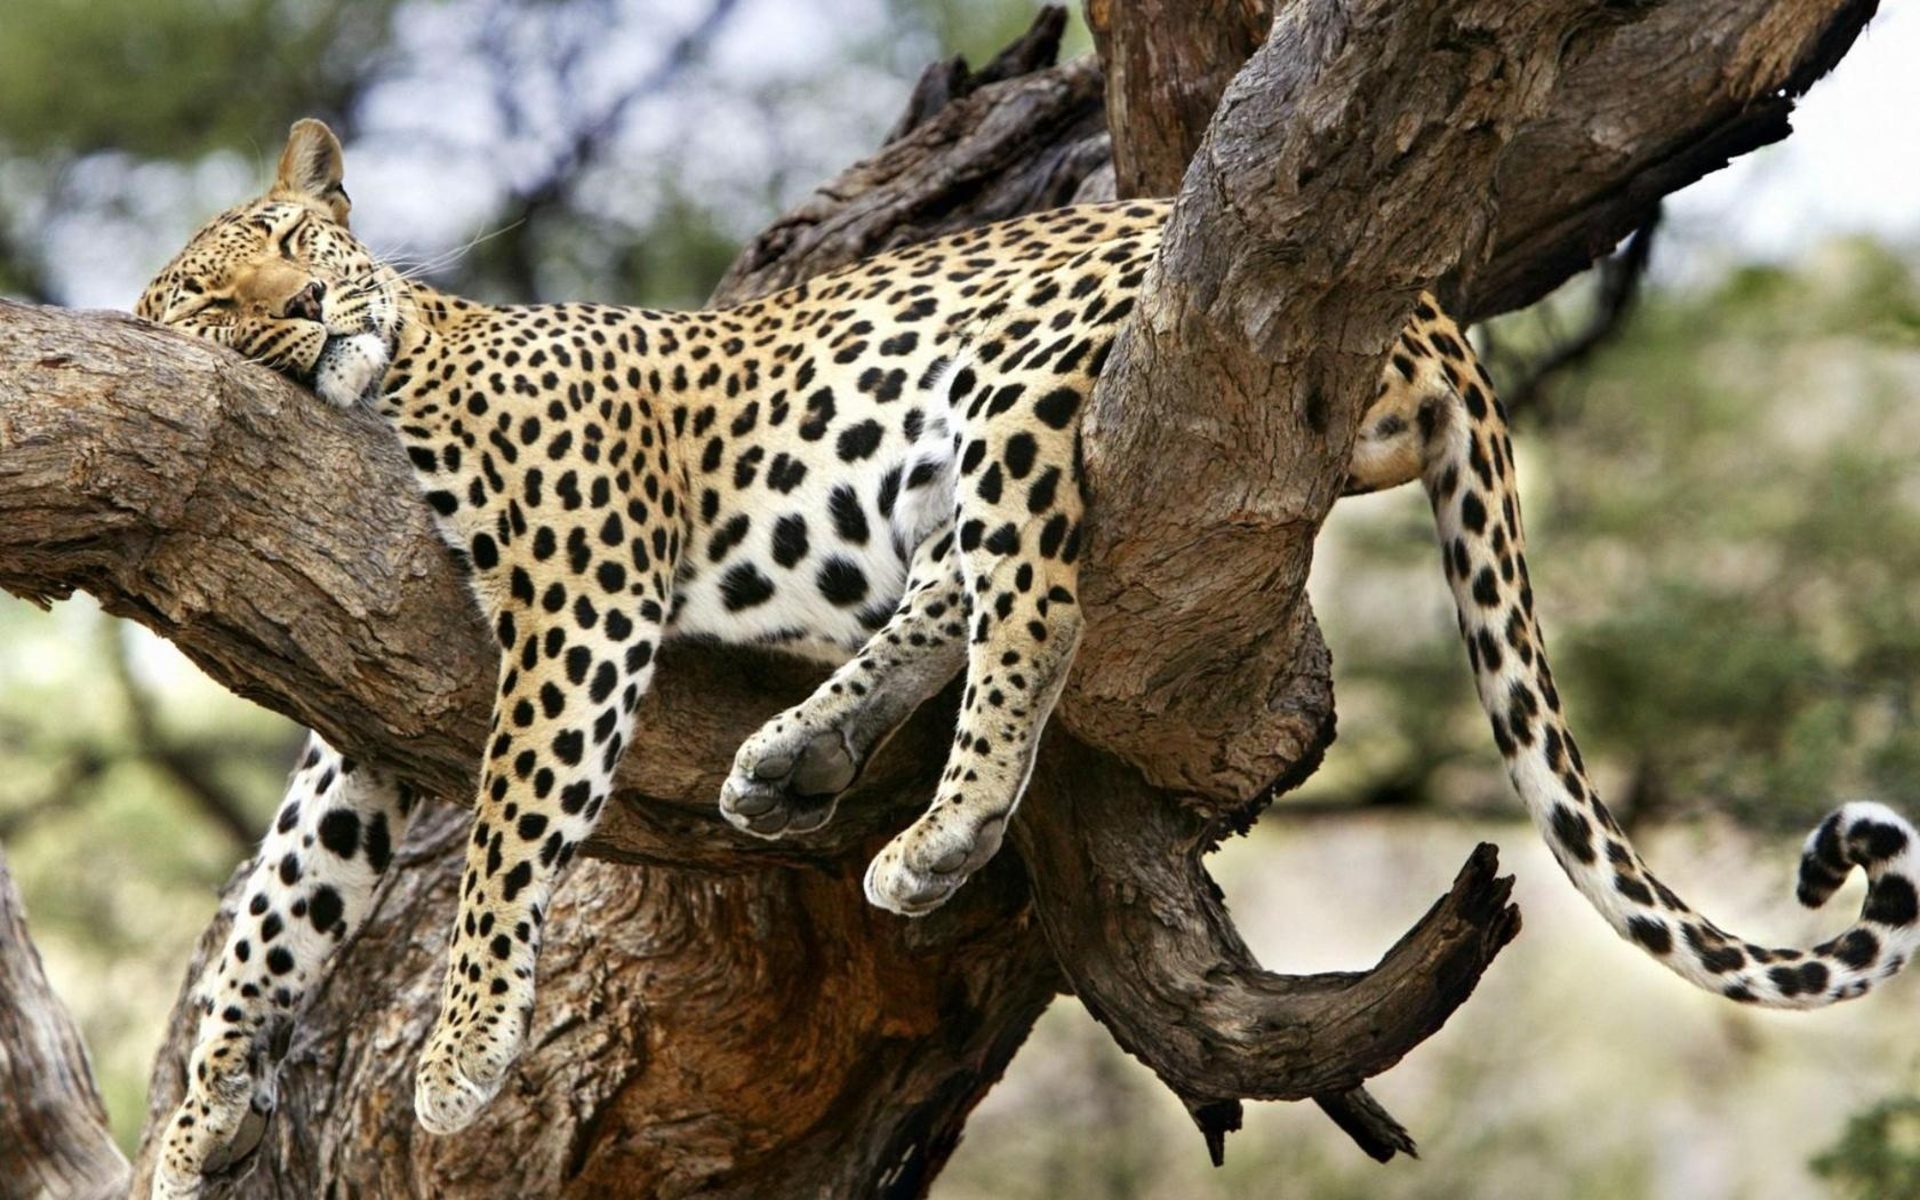 Descarga gratuita de fondo de pantalla para móvil de Dormido, Leopardo, Gatos, Árbol, Animales, Lindo.